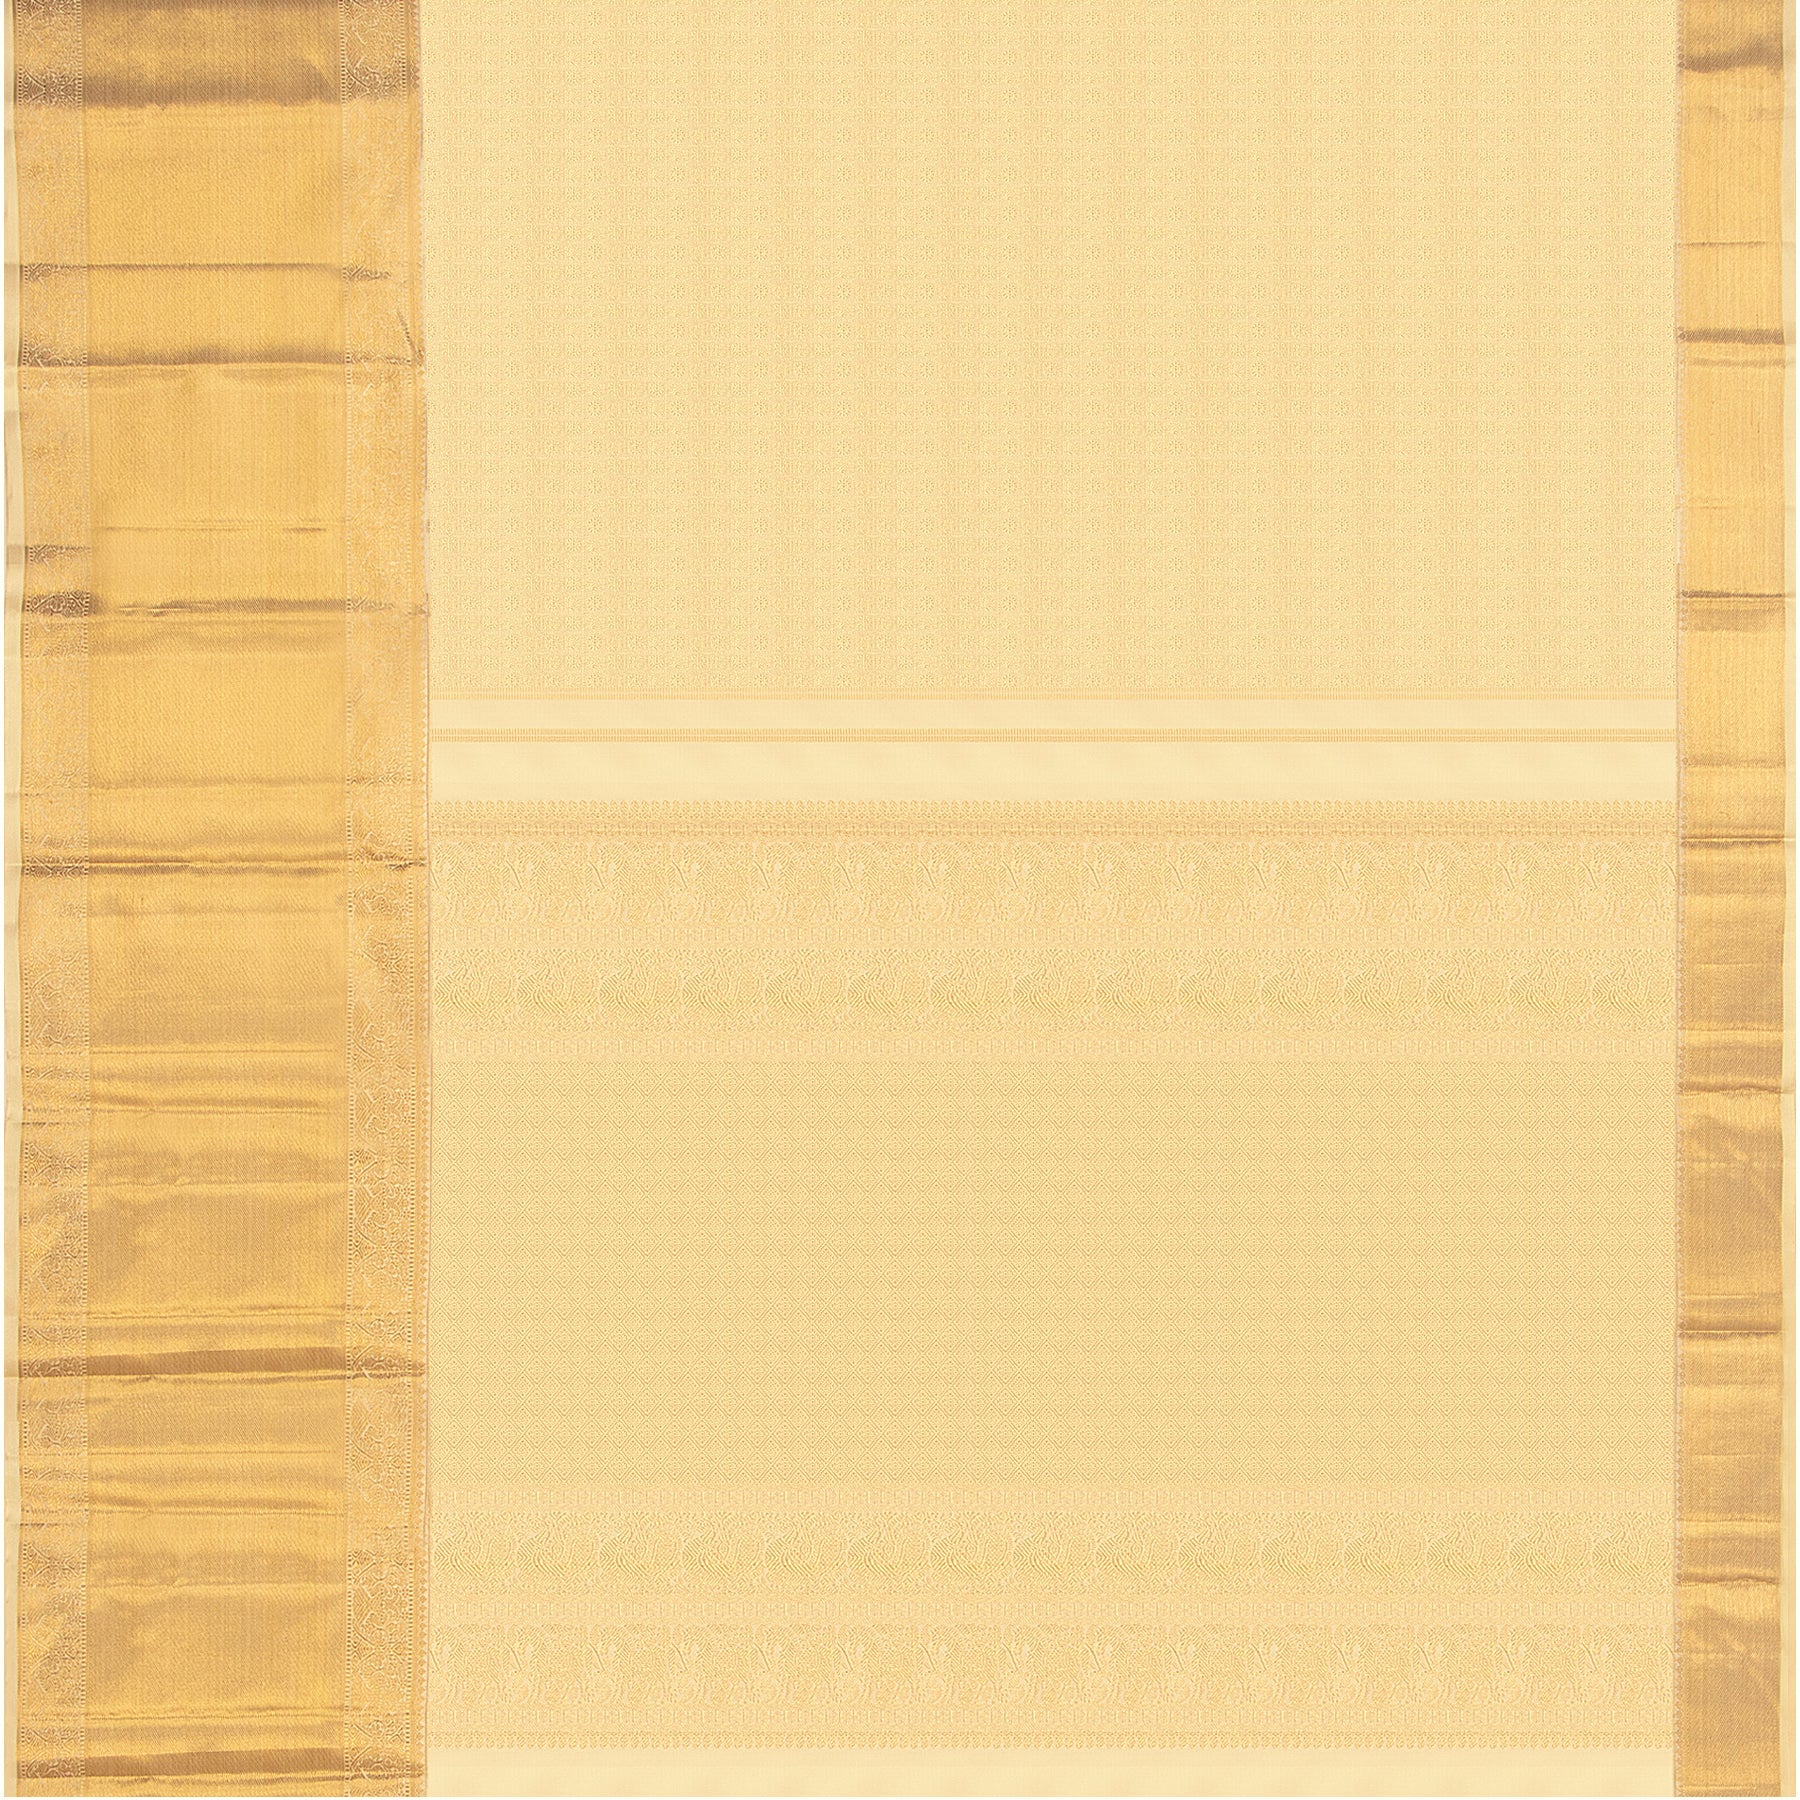 Kanakavalli Kanjivaram Silk Sari 23-110-HS001-13459 - Full View